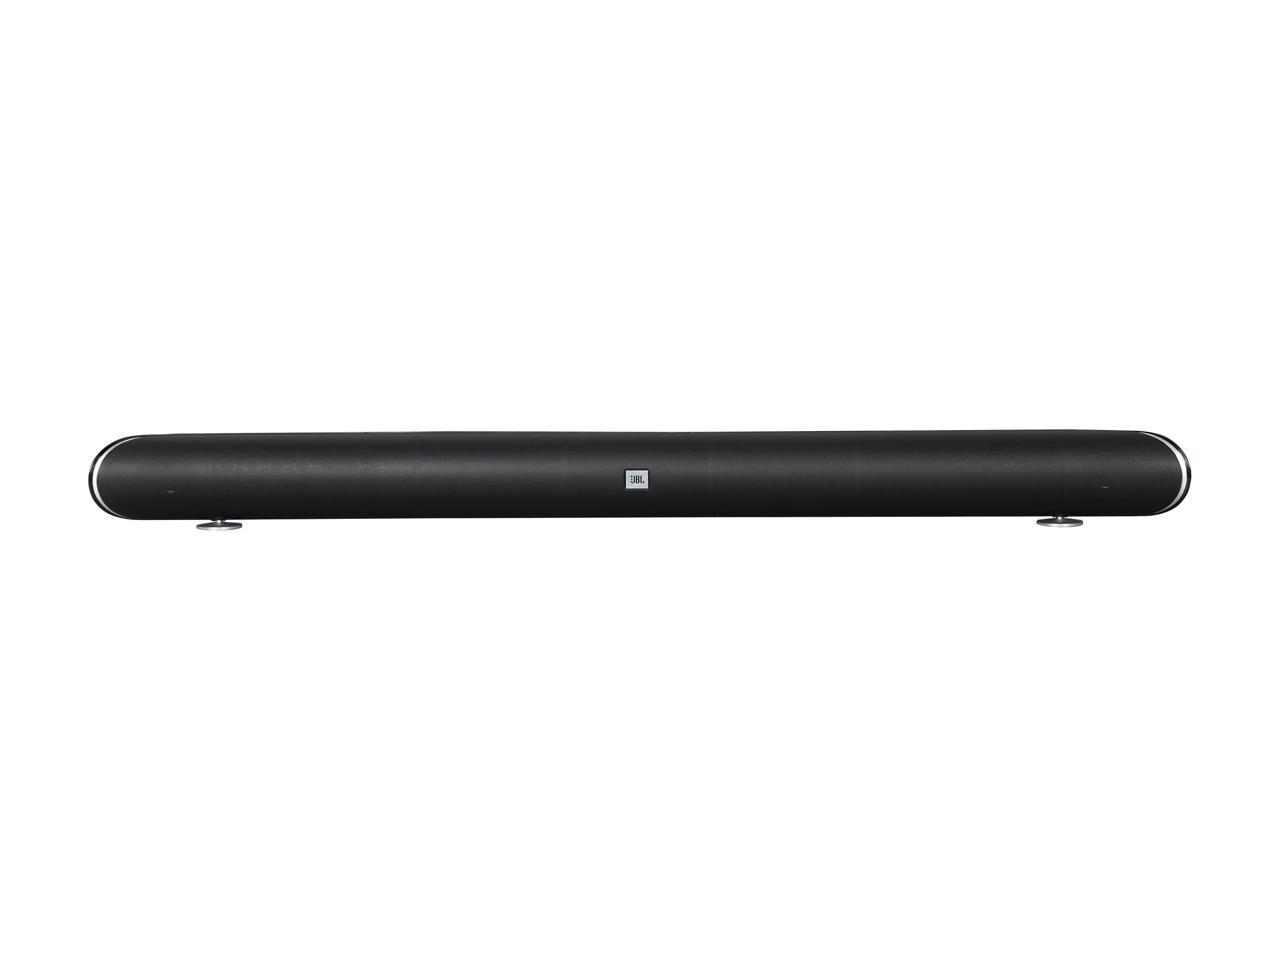 jbl cinema sb350 premium wireless soundbar with wireless subwoofer